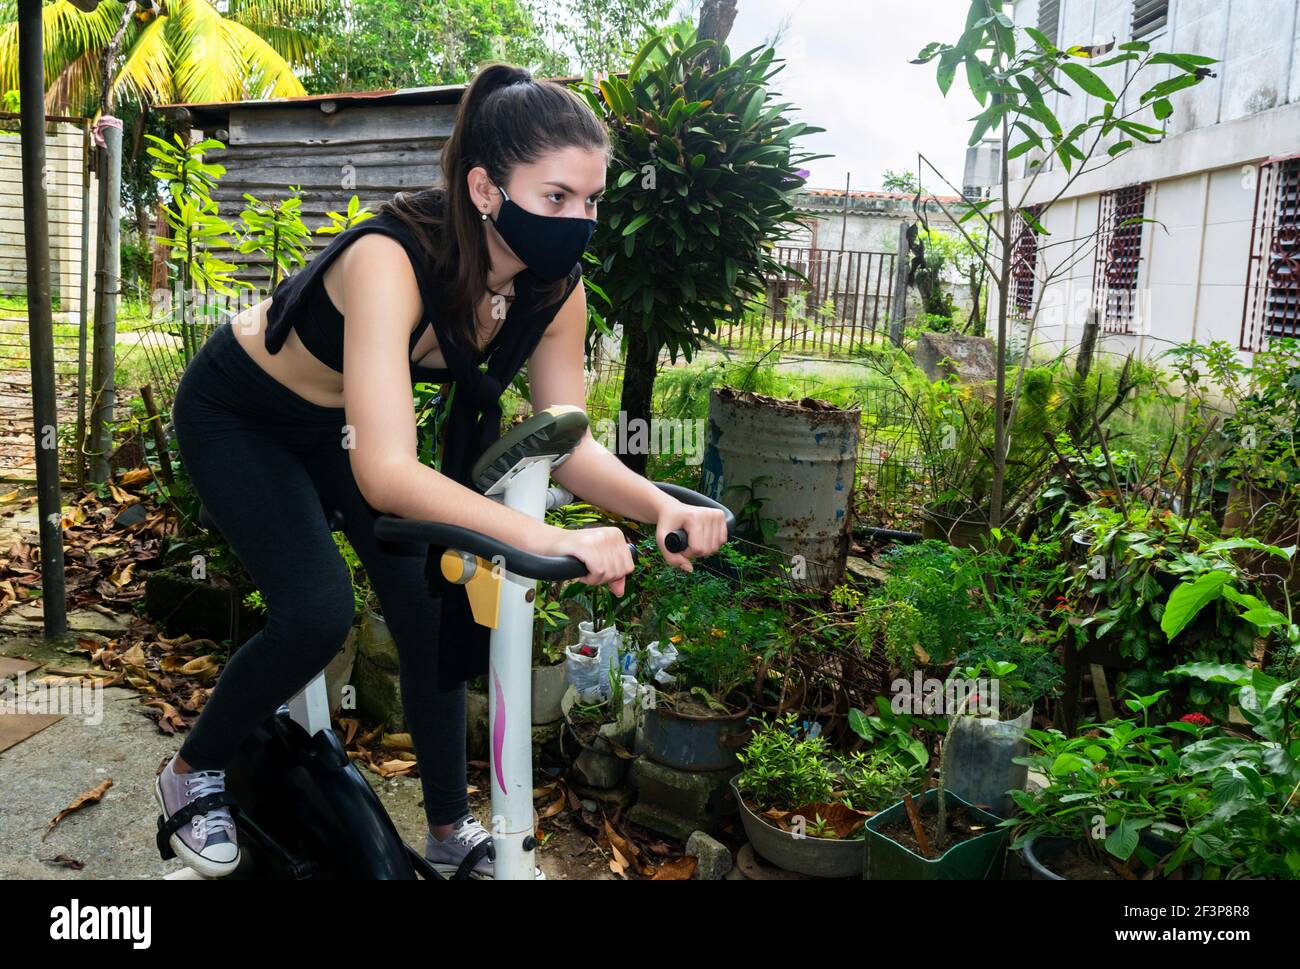 Junge kubanische Frau spinnen auf einem statischen Fahrrad in einem Hinterhof während Pandemiezeiten Stockfoto